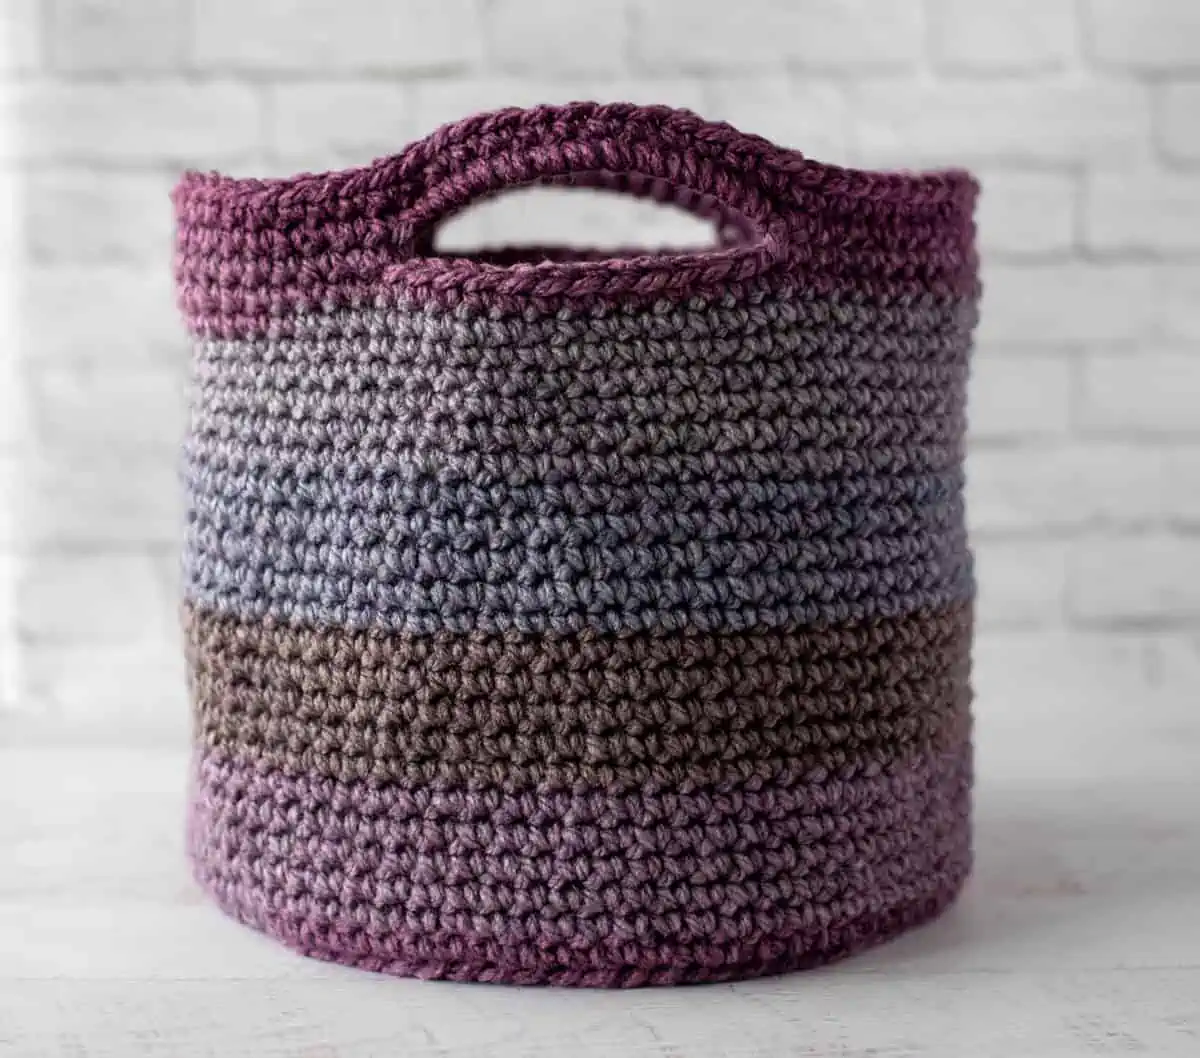 Crochet Basket Tote - Crochet 365 Knit Too